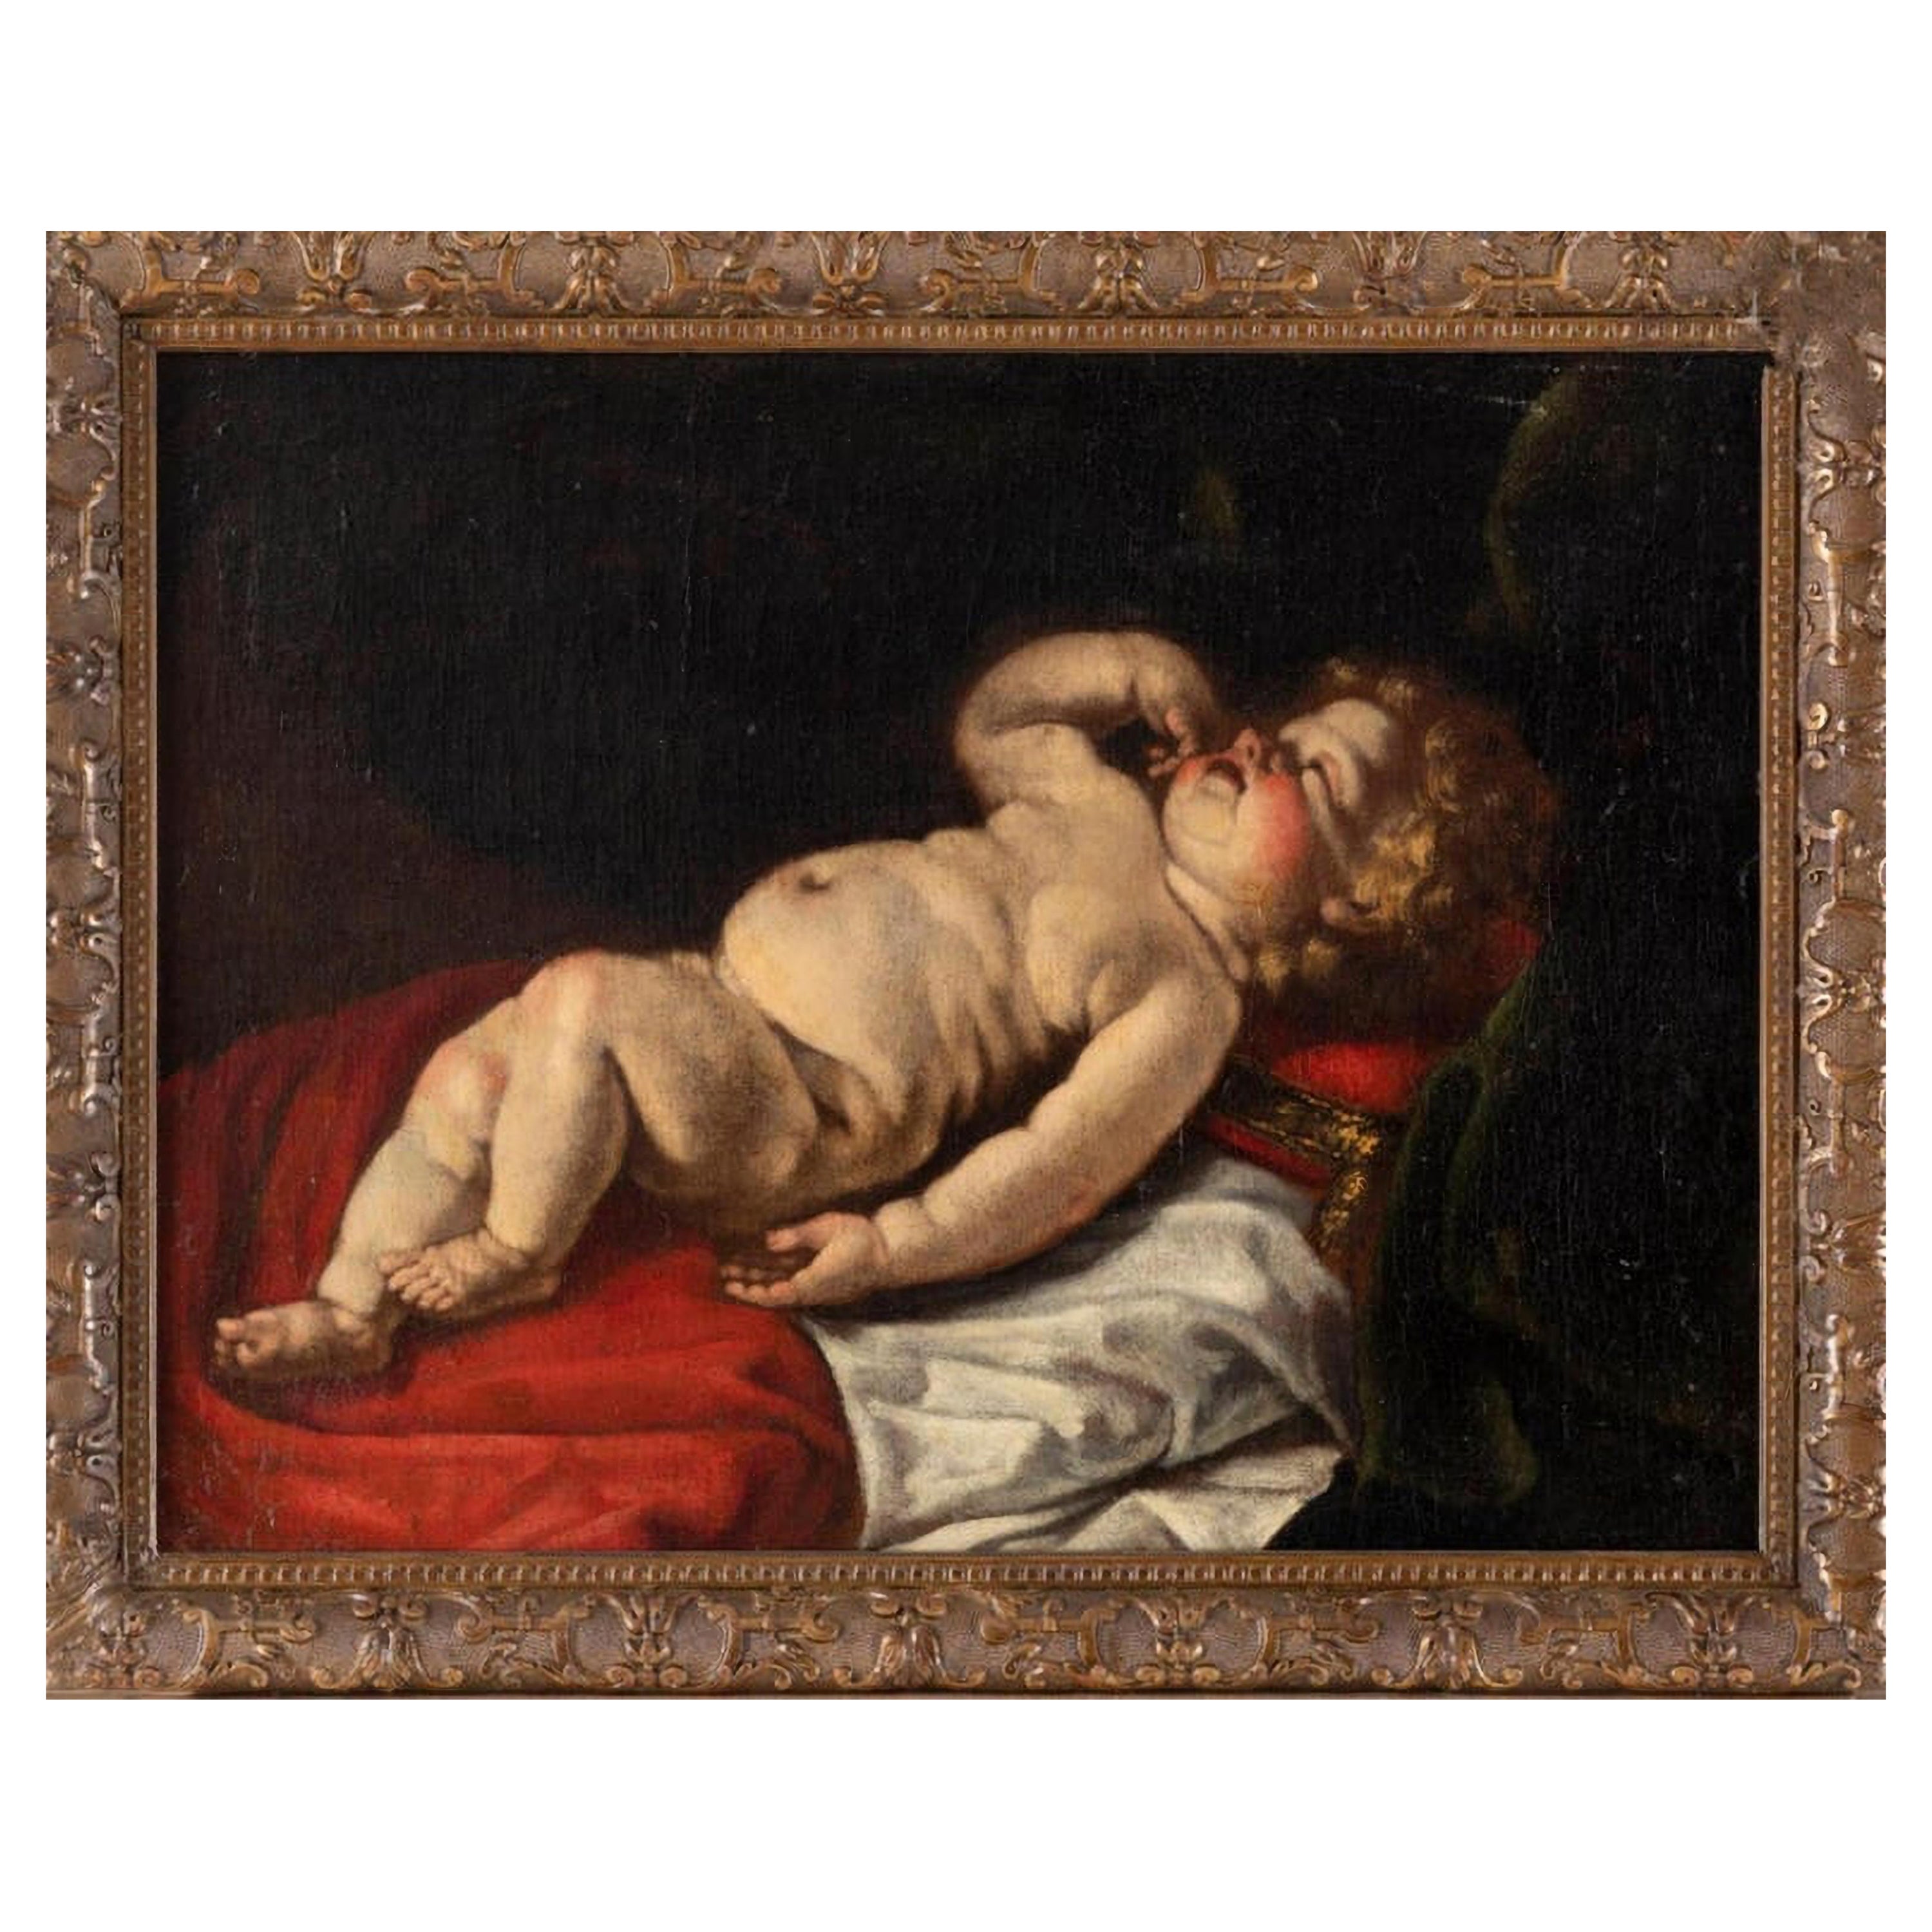 Luigi Miradori circa 1600 - circa 1657 "Young Sleeping Child" 17th Century VIDE0